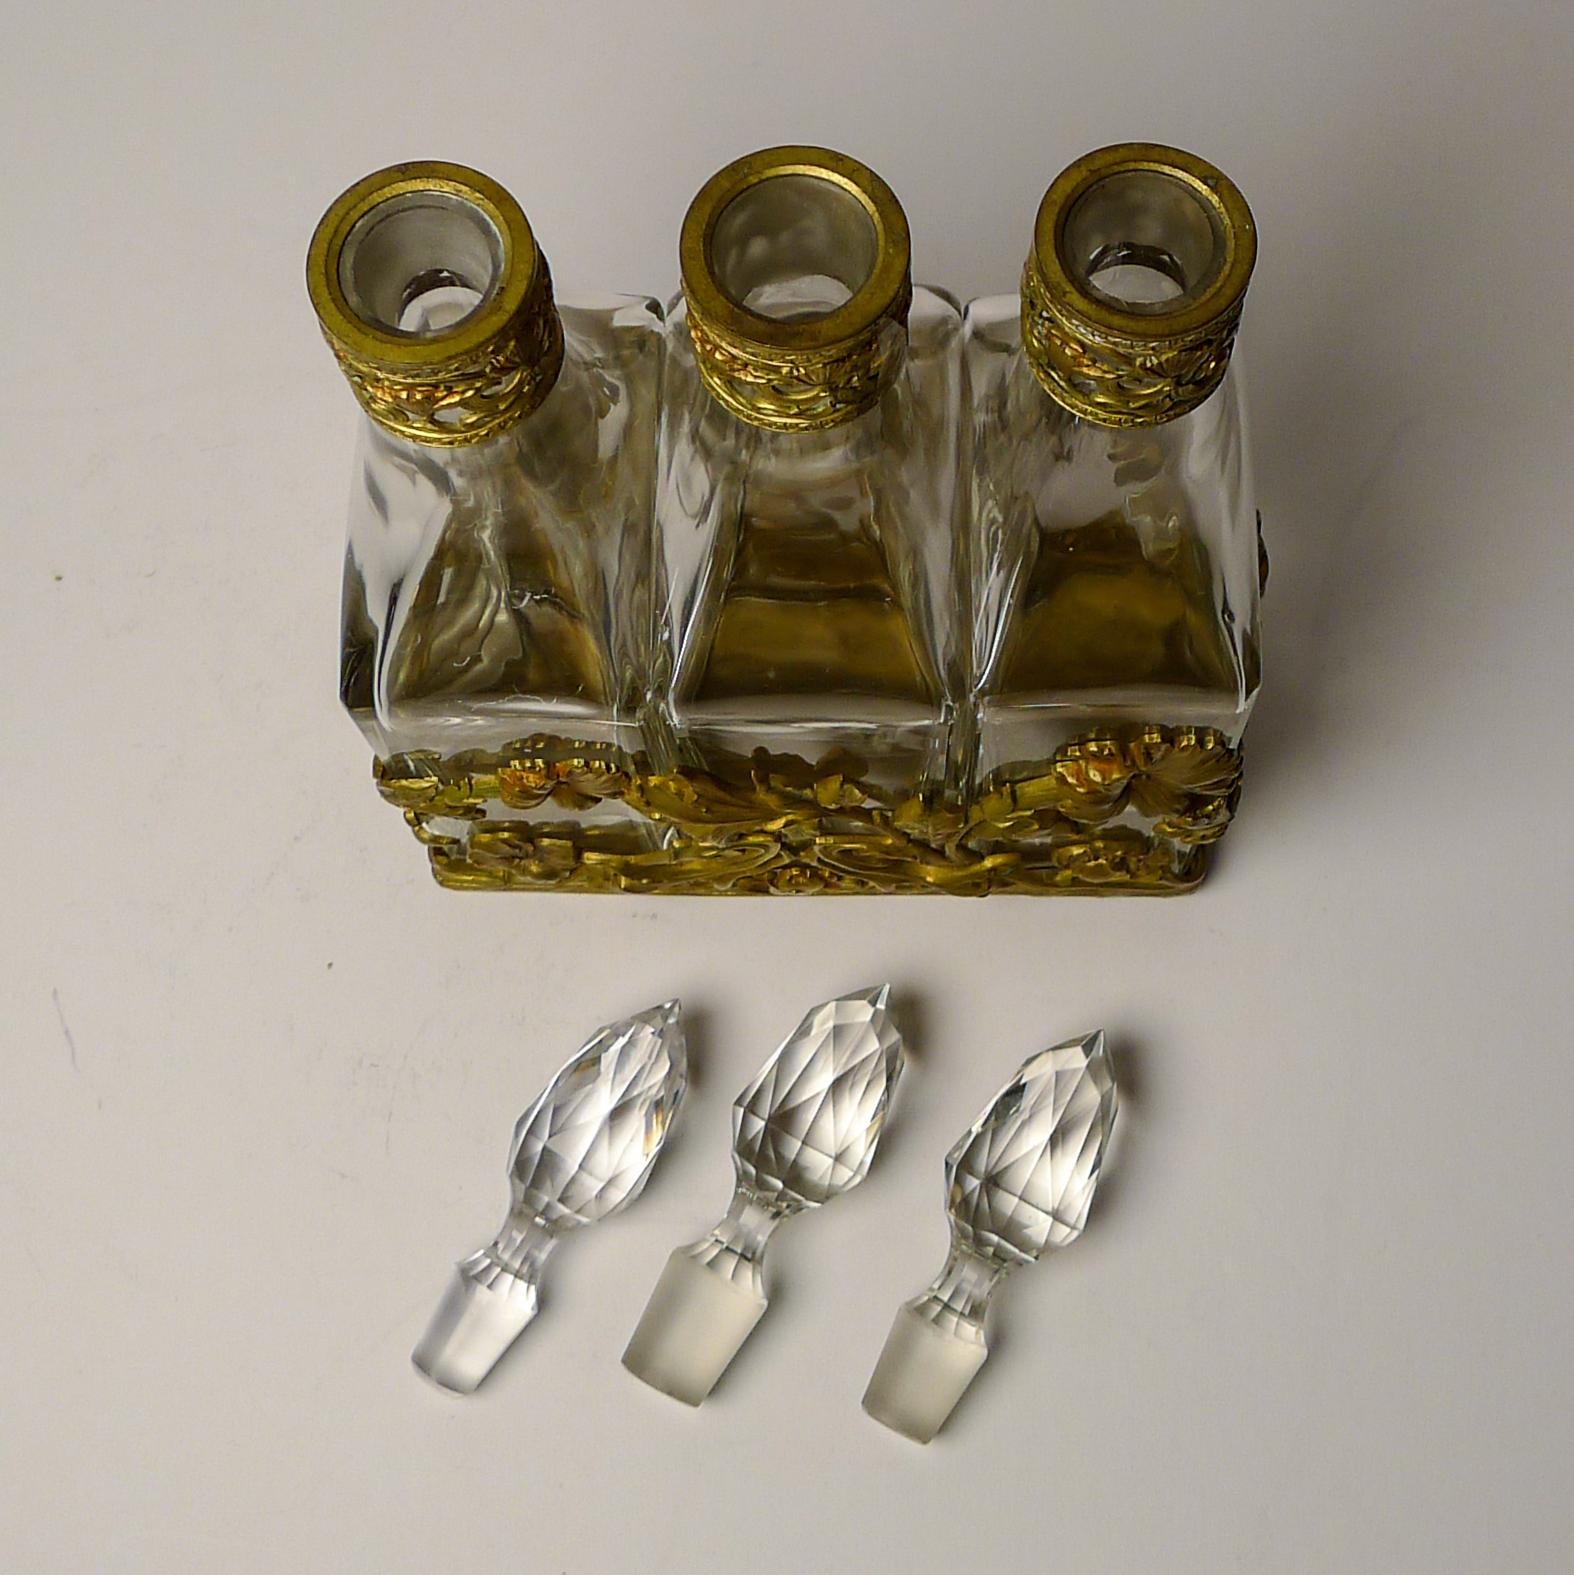 French Art Nouveau Liquor Decanter Set / Perfume Caddy c.1900 For Sale 11